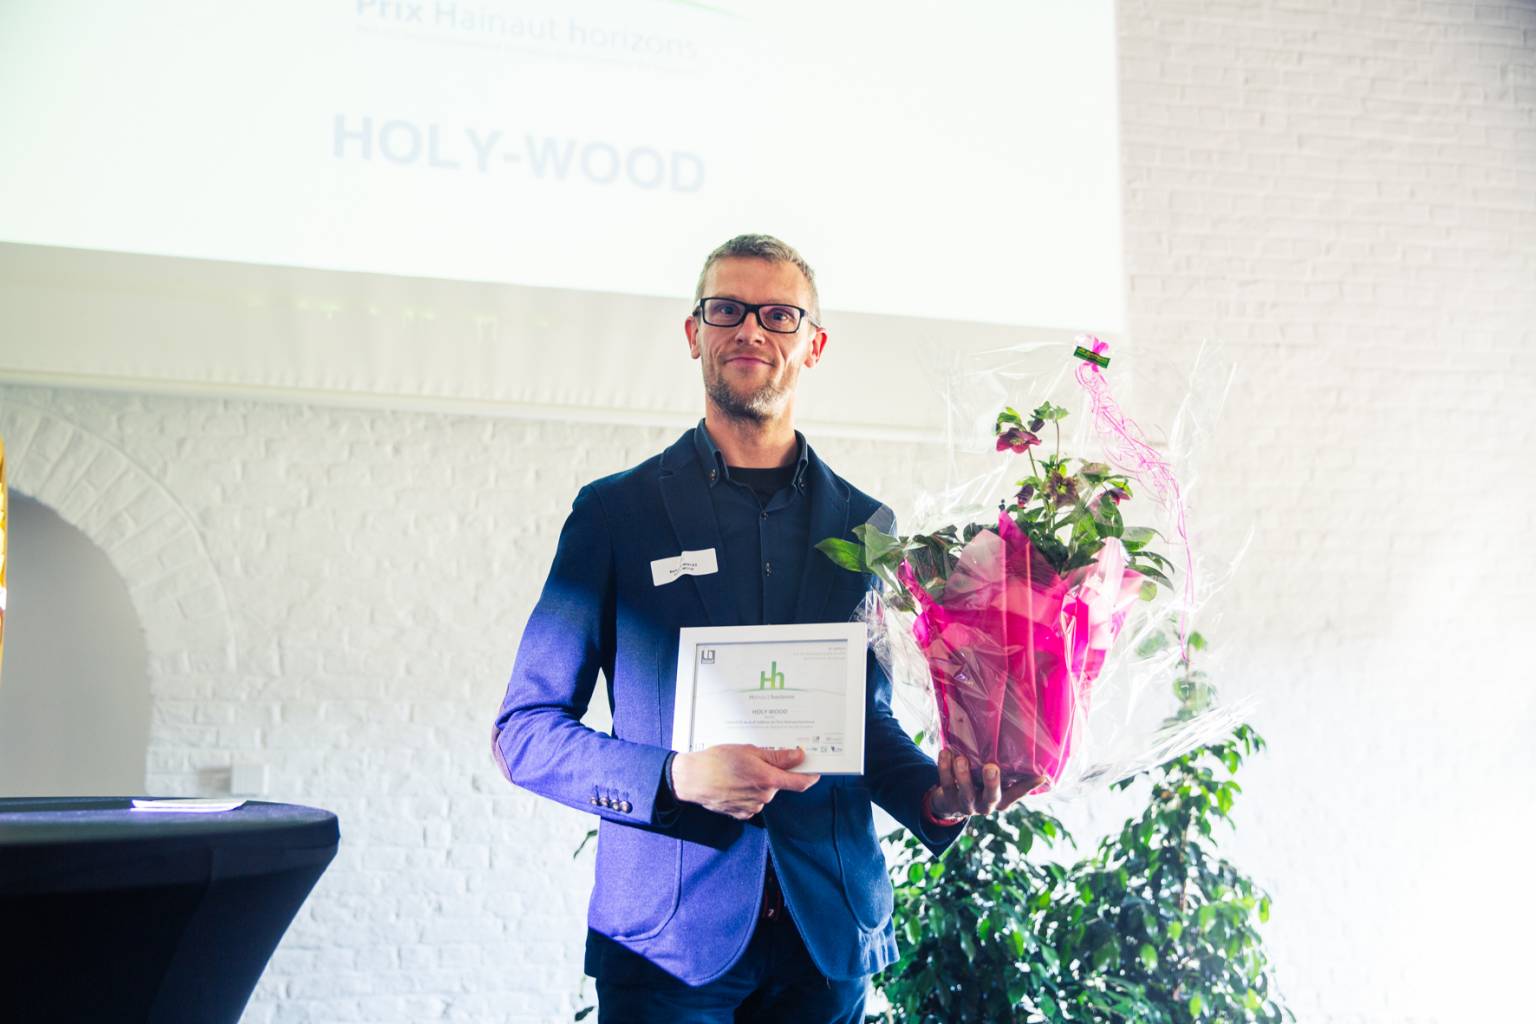 Le Lauréat du Prix Hainaut horizons 8e édition est HOLY-WOOD.